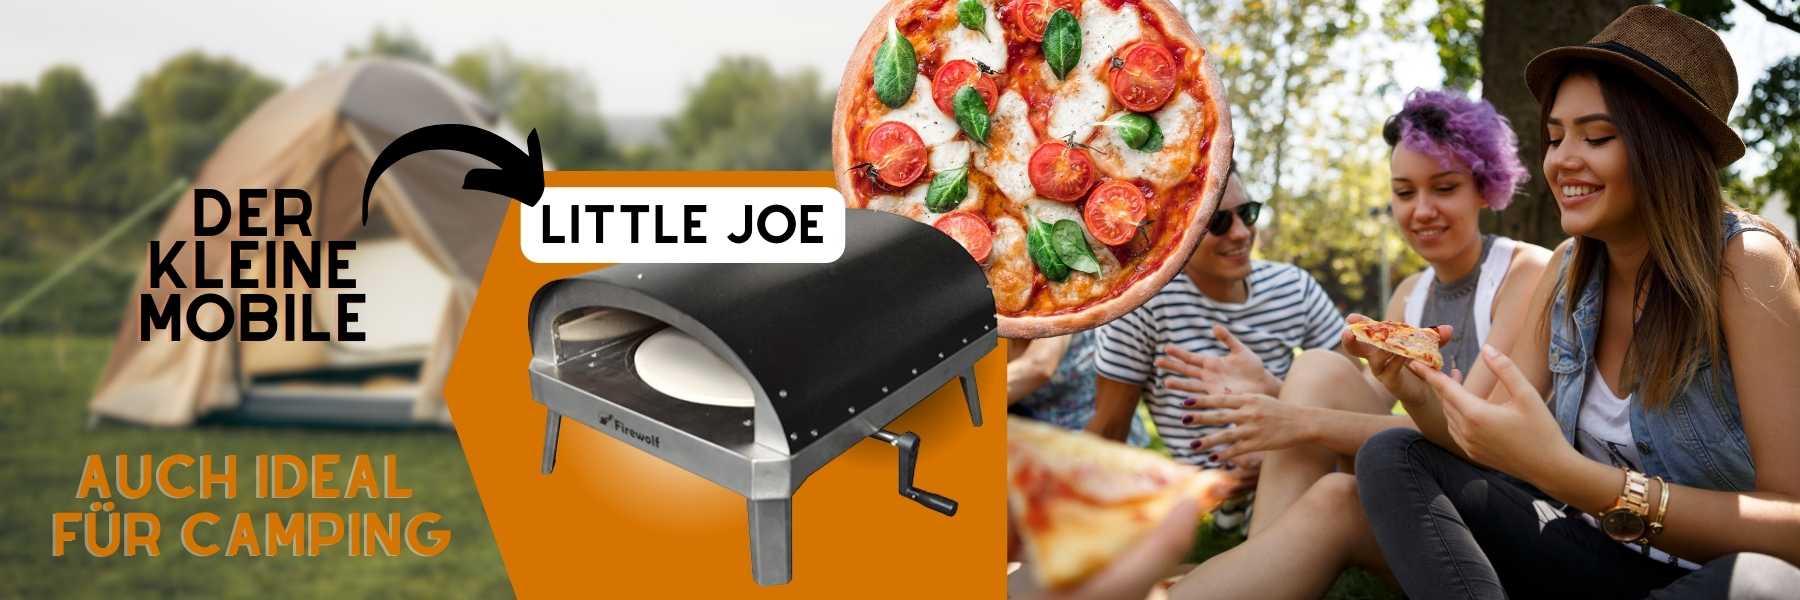 101-Little-Joe